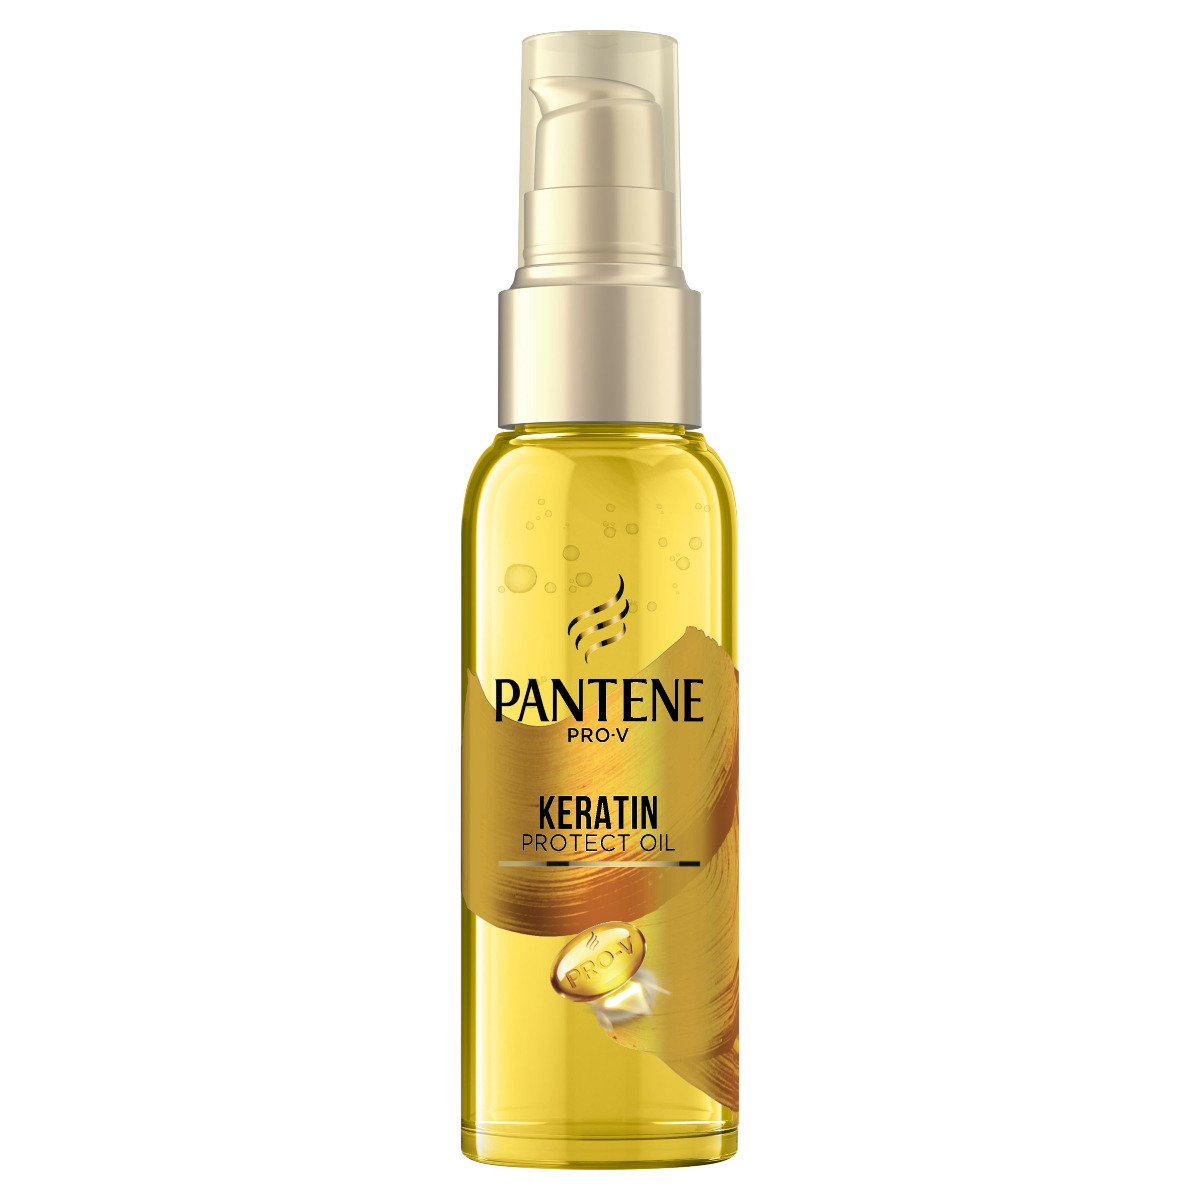 Pantene Pro-V Keratin Protect vlasový olej 100 ml Pantene Pro-V